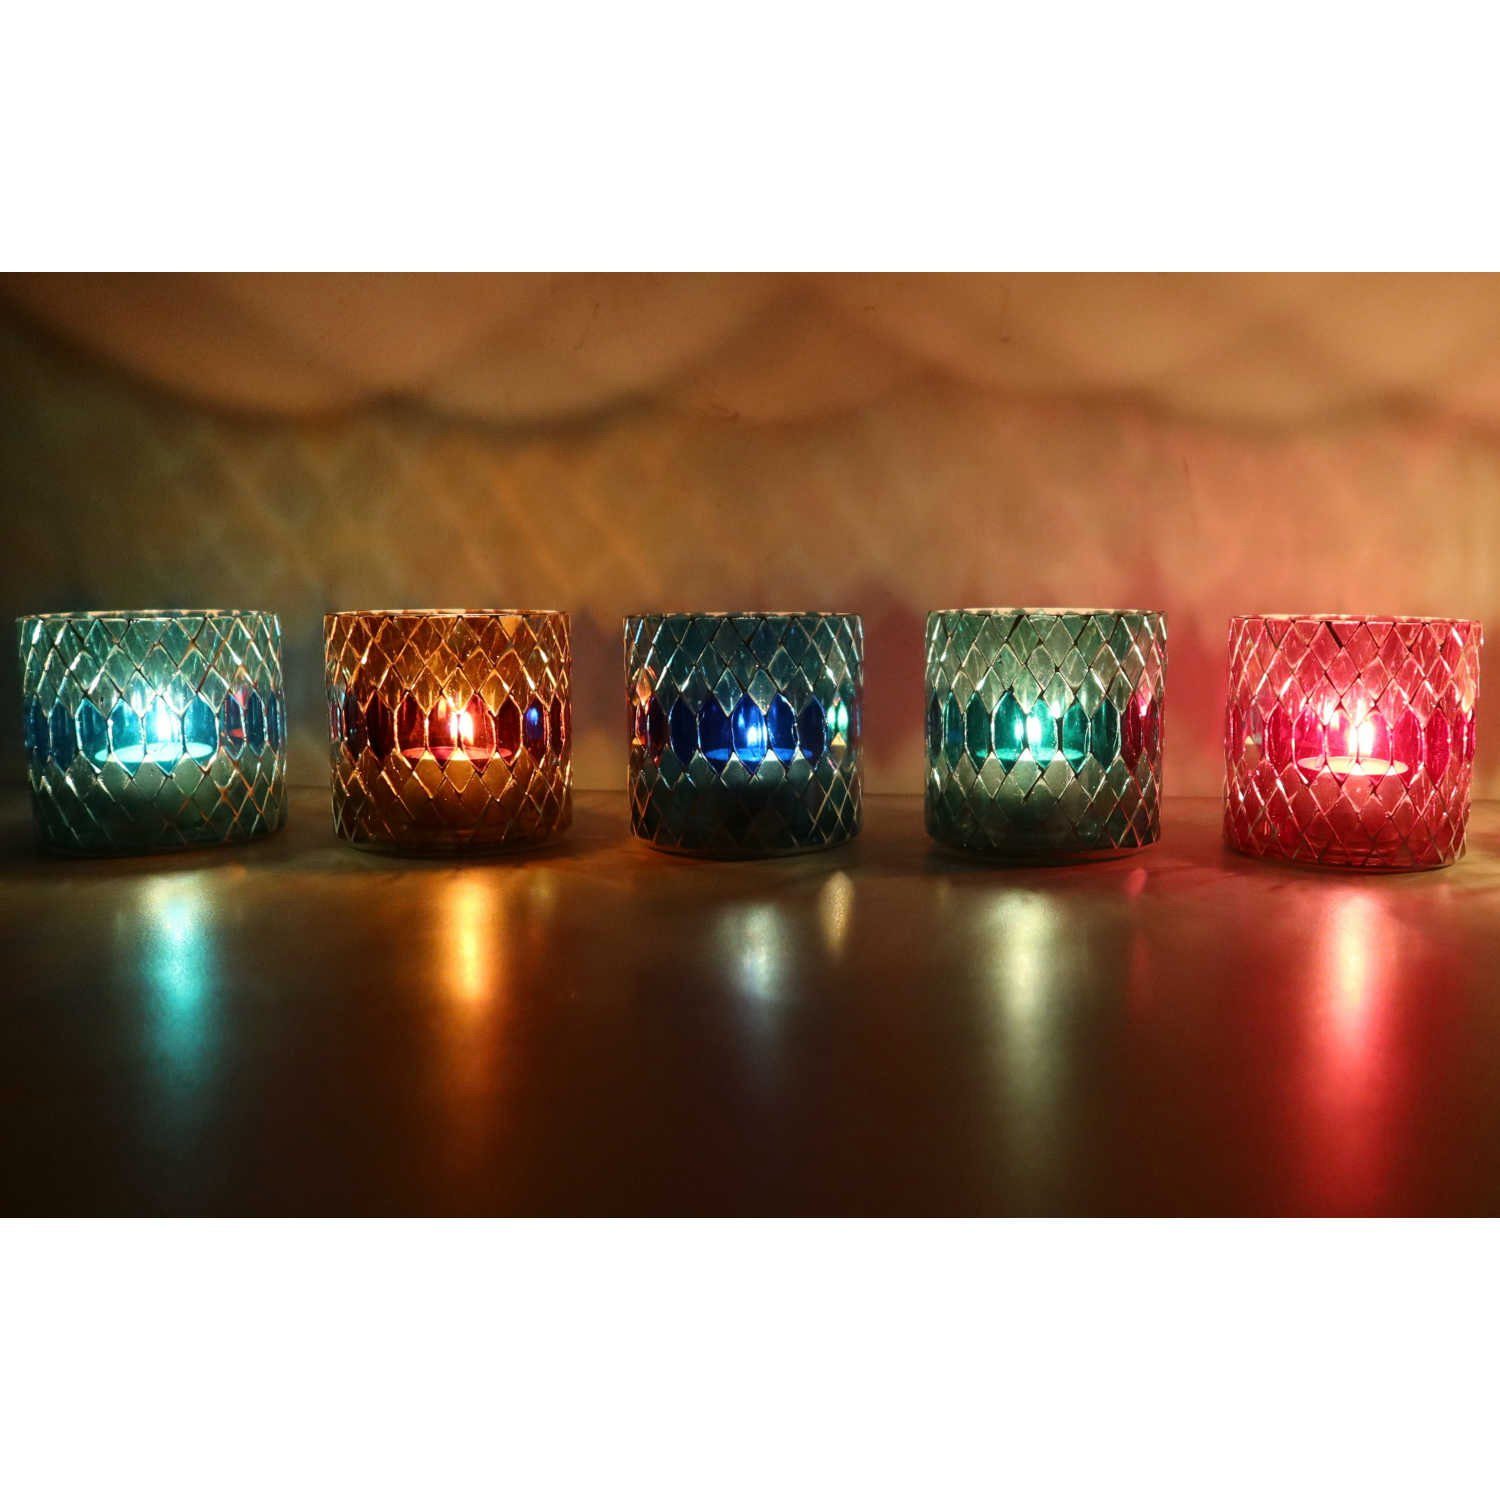 Casa Moro Windlicht Marokkanisches Mosaik Glas-Windlicht Rayan-S 5er Set Ø 8cm in 5 Farben (Boho Chic Kerzenständer rund Kerzenhalter), Weihnachten Teelichthalter bunt orientalisch Glaswindlicht, WZ170-S